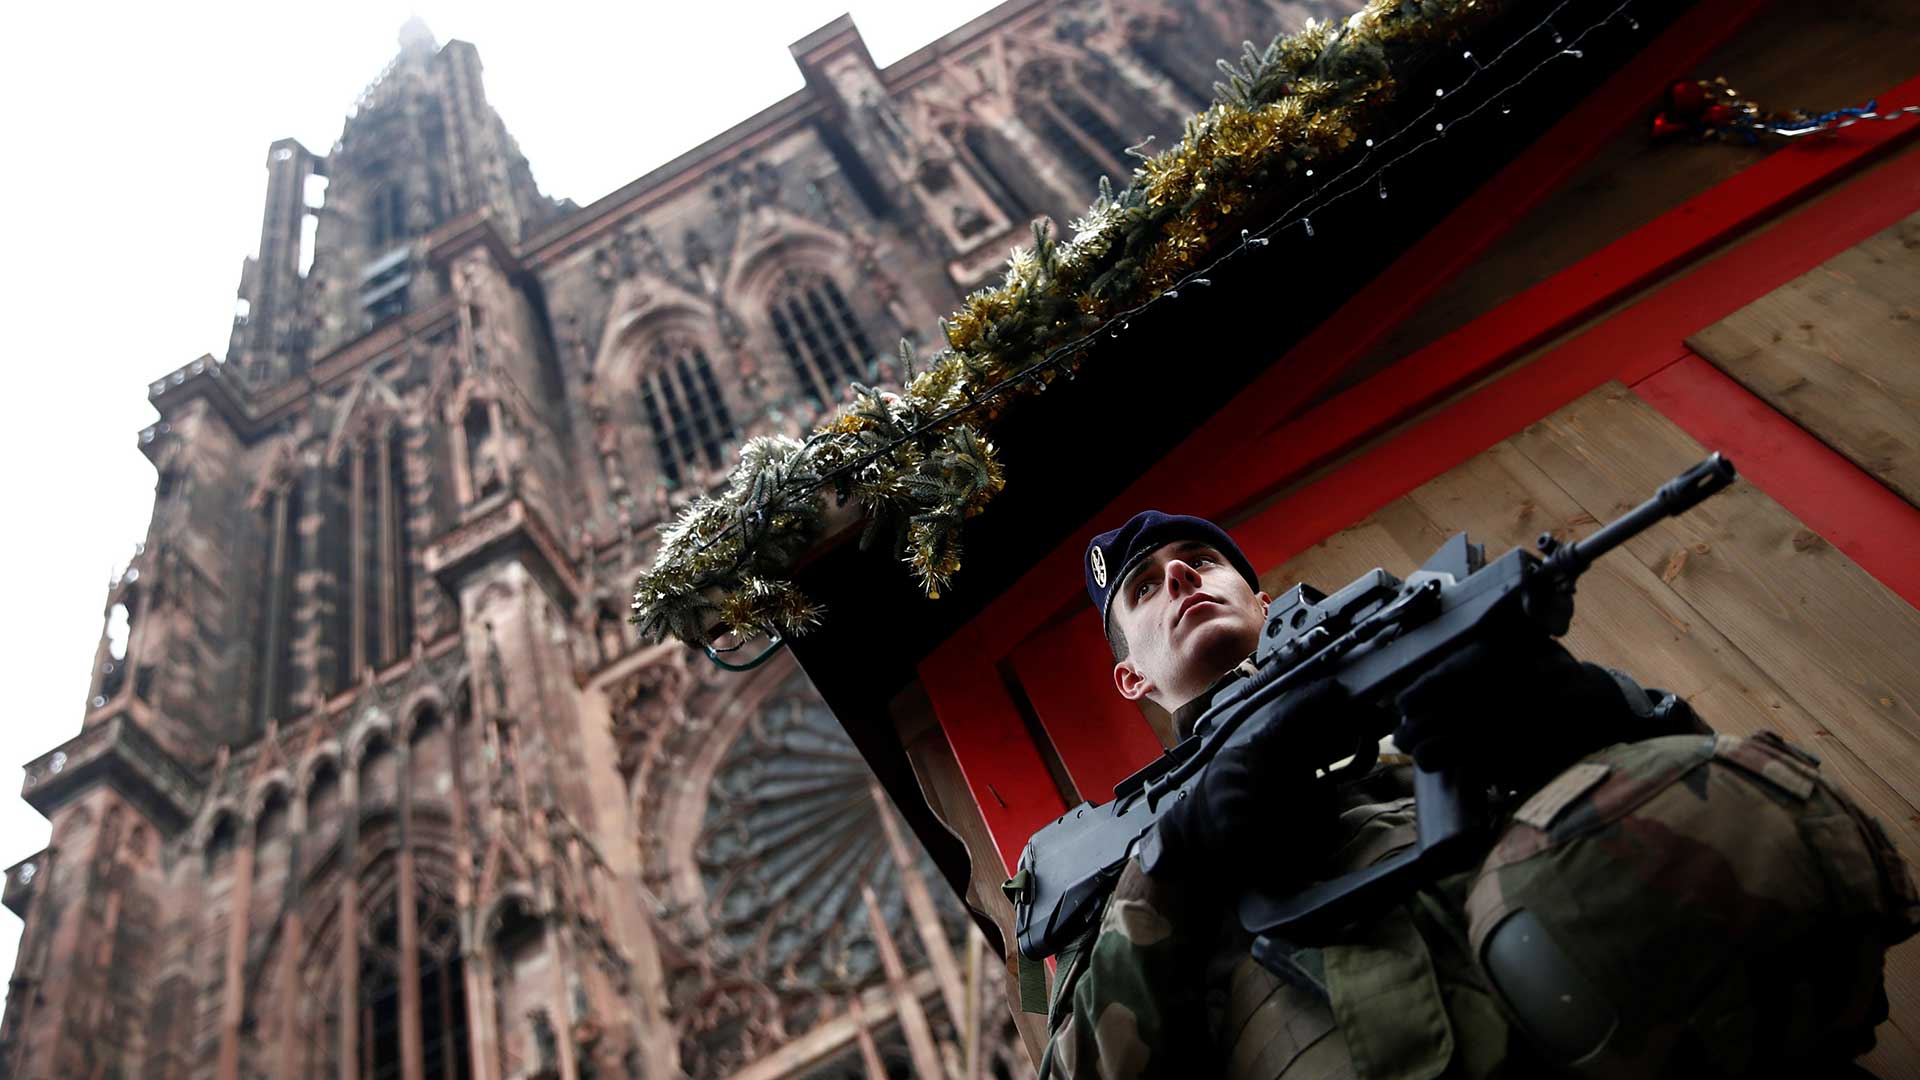 El autor del tiroteo de Estrasburgo gritó "Alá es grande" mientras disparaba